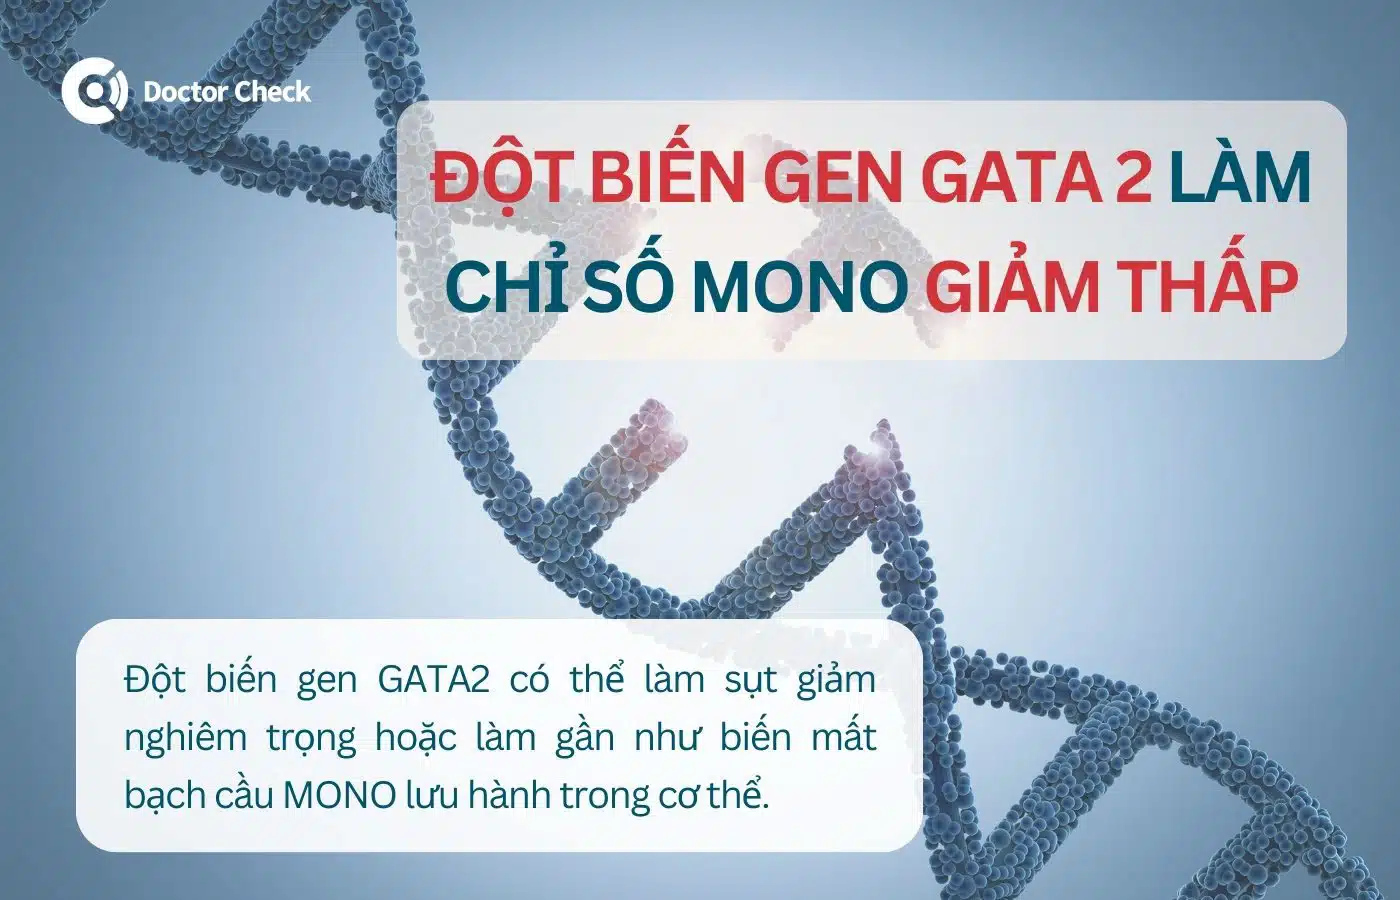 Đột biền gen làm chỉ số MONO trong xét nghiệm máu giảm thấp là gì?